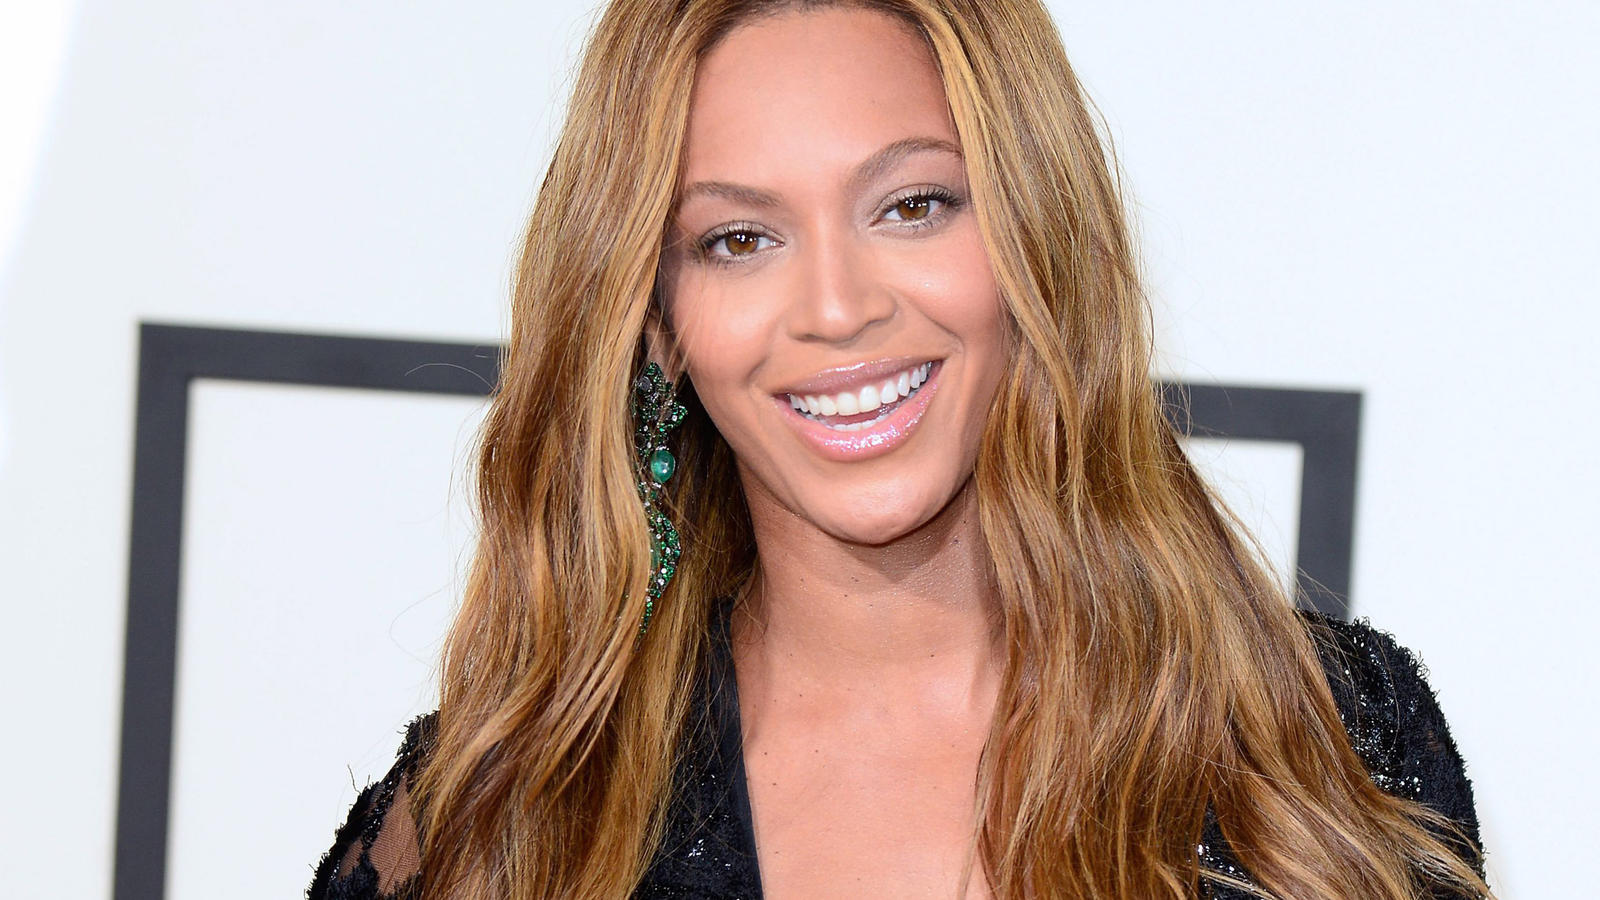 ARCHIV -Die US-Sängerin Beyonce kommt am 08.02.2015 in Los Angeles (USA) zur 57. Grammy-Verleihung. (Zu dpa "Beyonce spendet Einnahmen ihres neuen Songs an Hurrikan-Opfer" vom 29.09.2017) Foto: Michael Nelson/EPA/dpa +++(c) dpa - Bildfunk+++